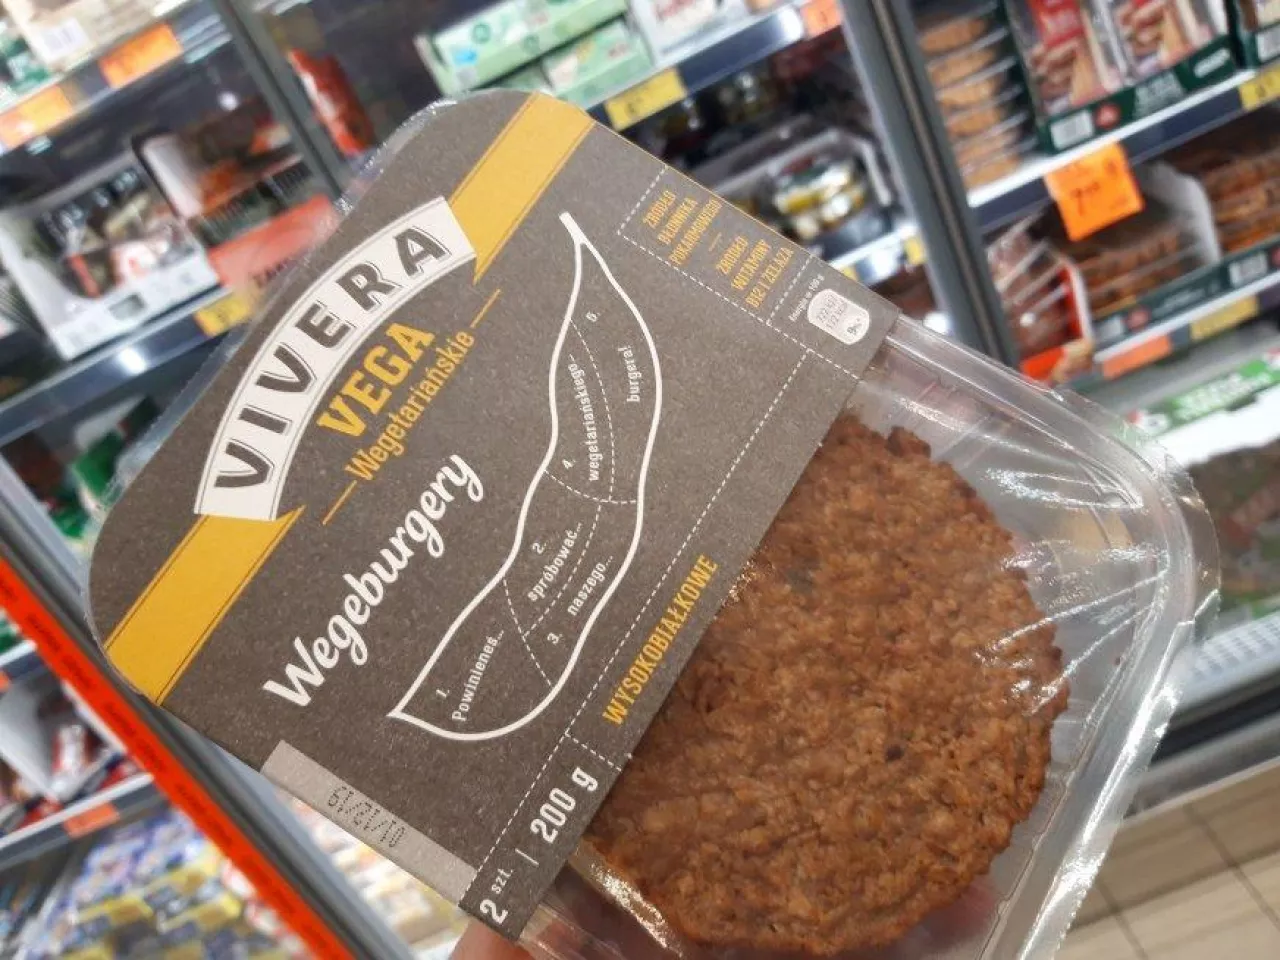 Biedronka wprowadiła do sprzedaży wegetariańskie burgery pod marką Vivera  (materiały własne)